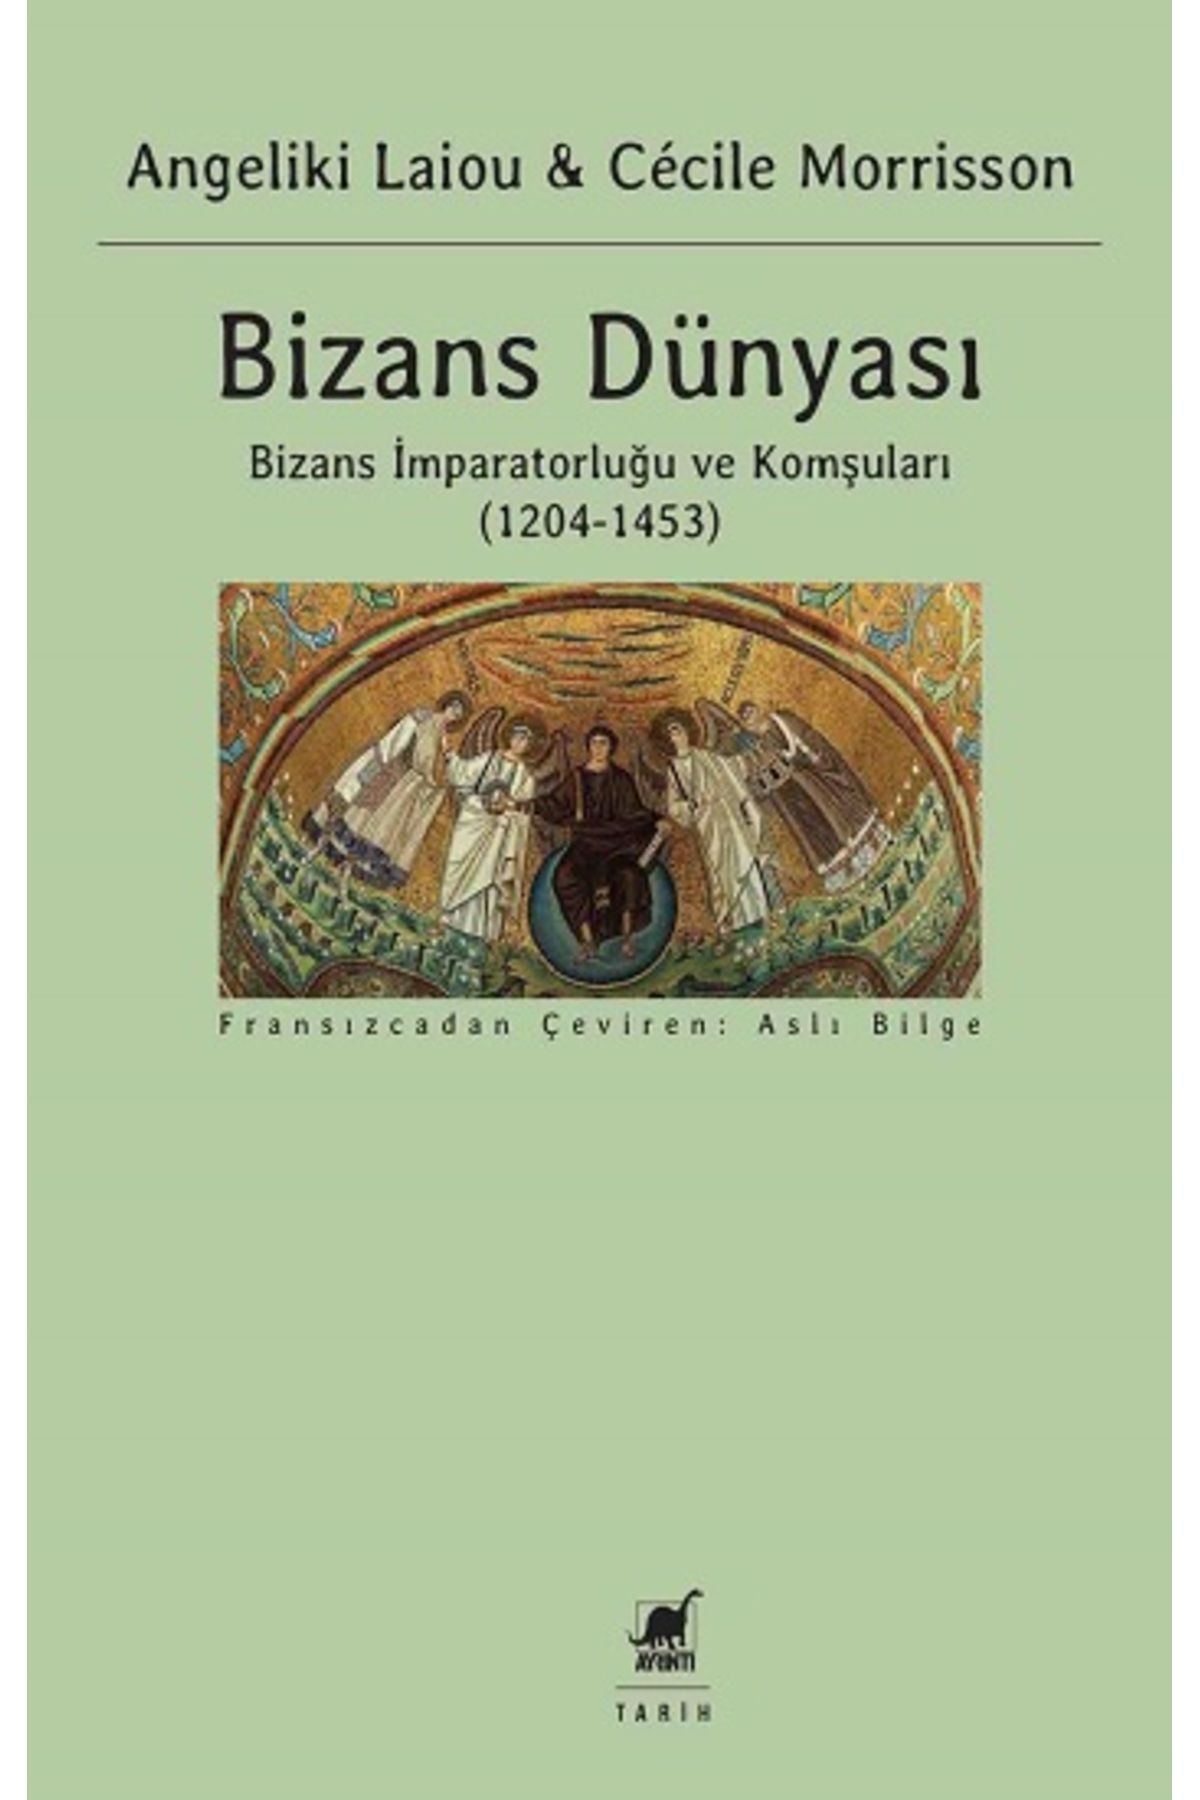 Ayrıntı Yayınları Bizans Dünyası 3. Cilt kitabı - Angeliki Laiou & Cecile Morrisson - Ayrıntı Yayınları